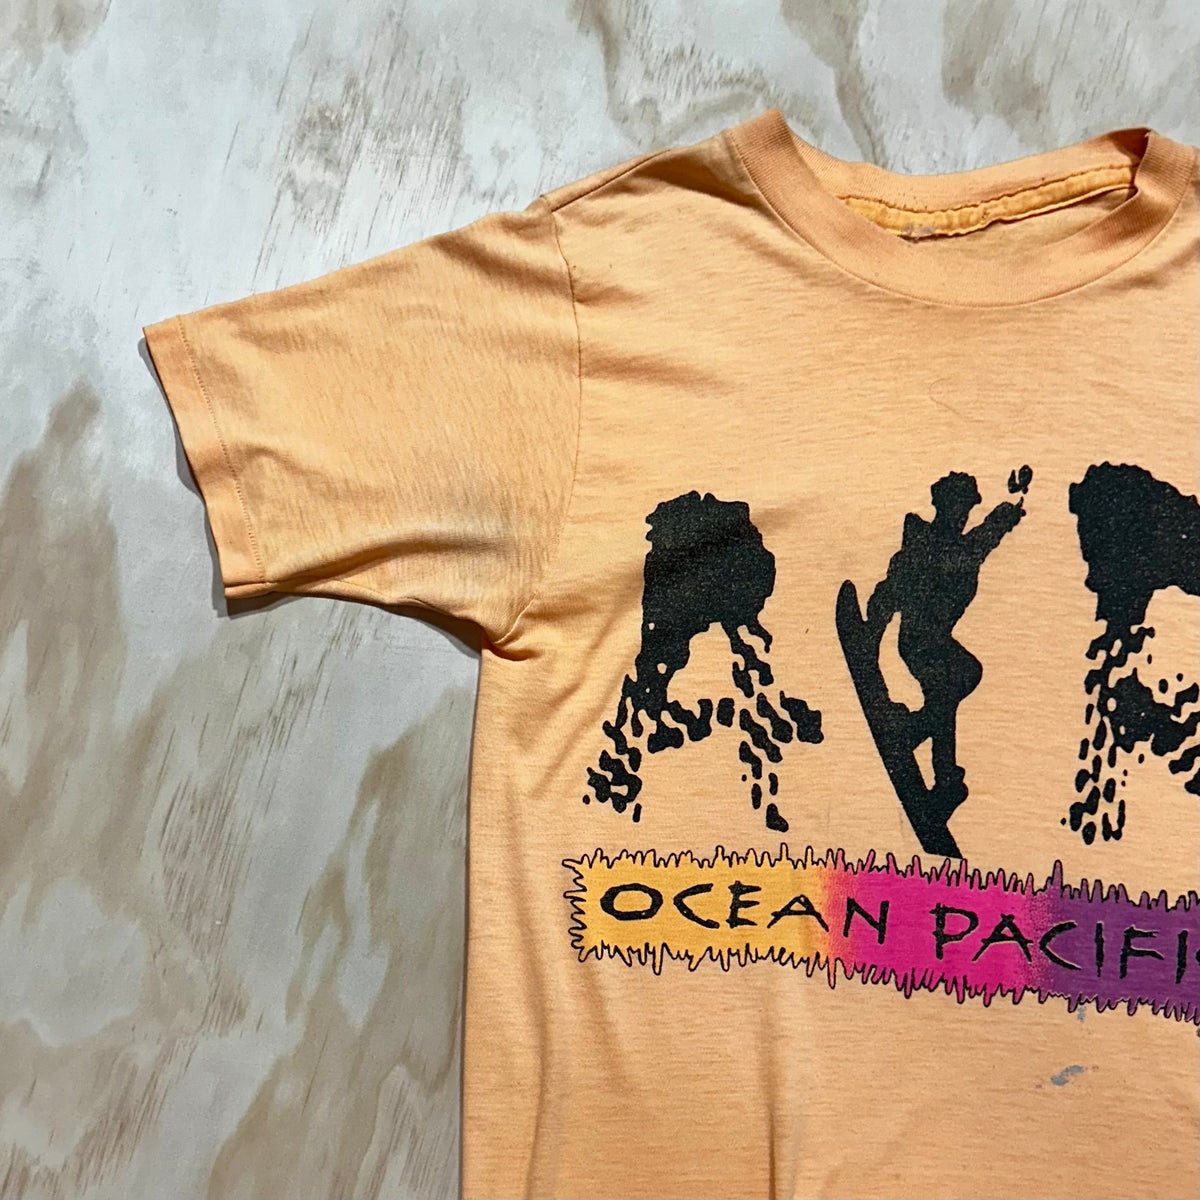 Vintage 80s Ocean Pacific Tee Air OP Surfing Shirt